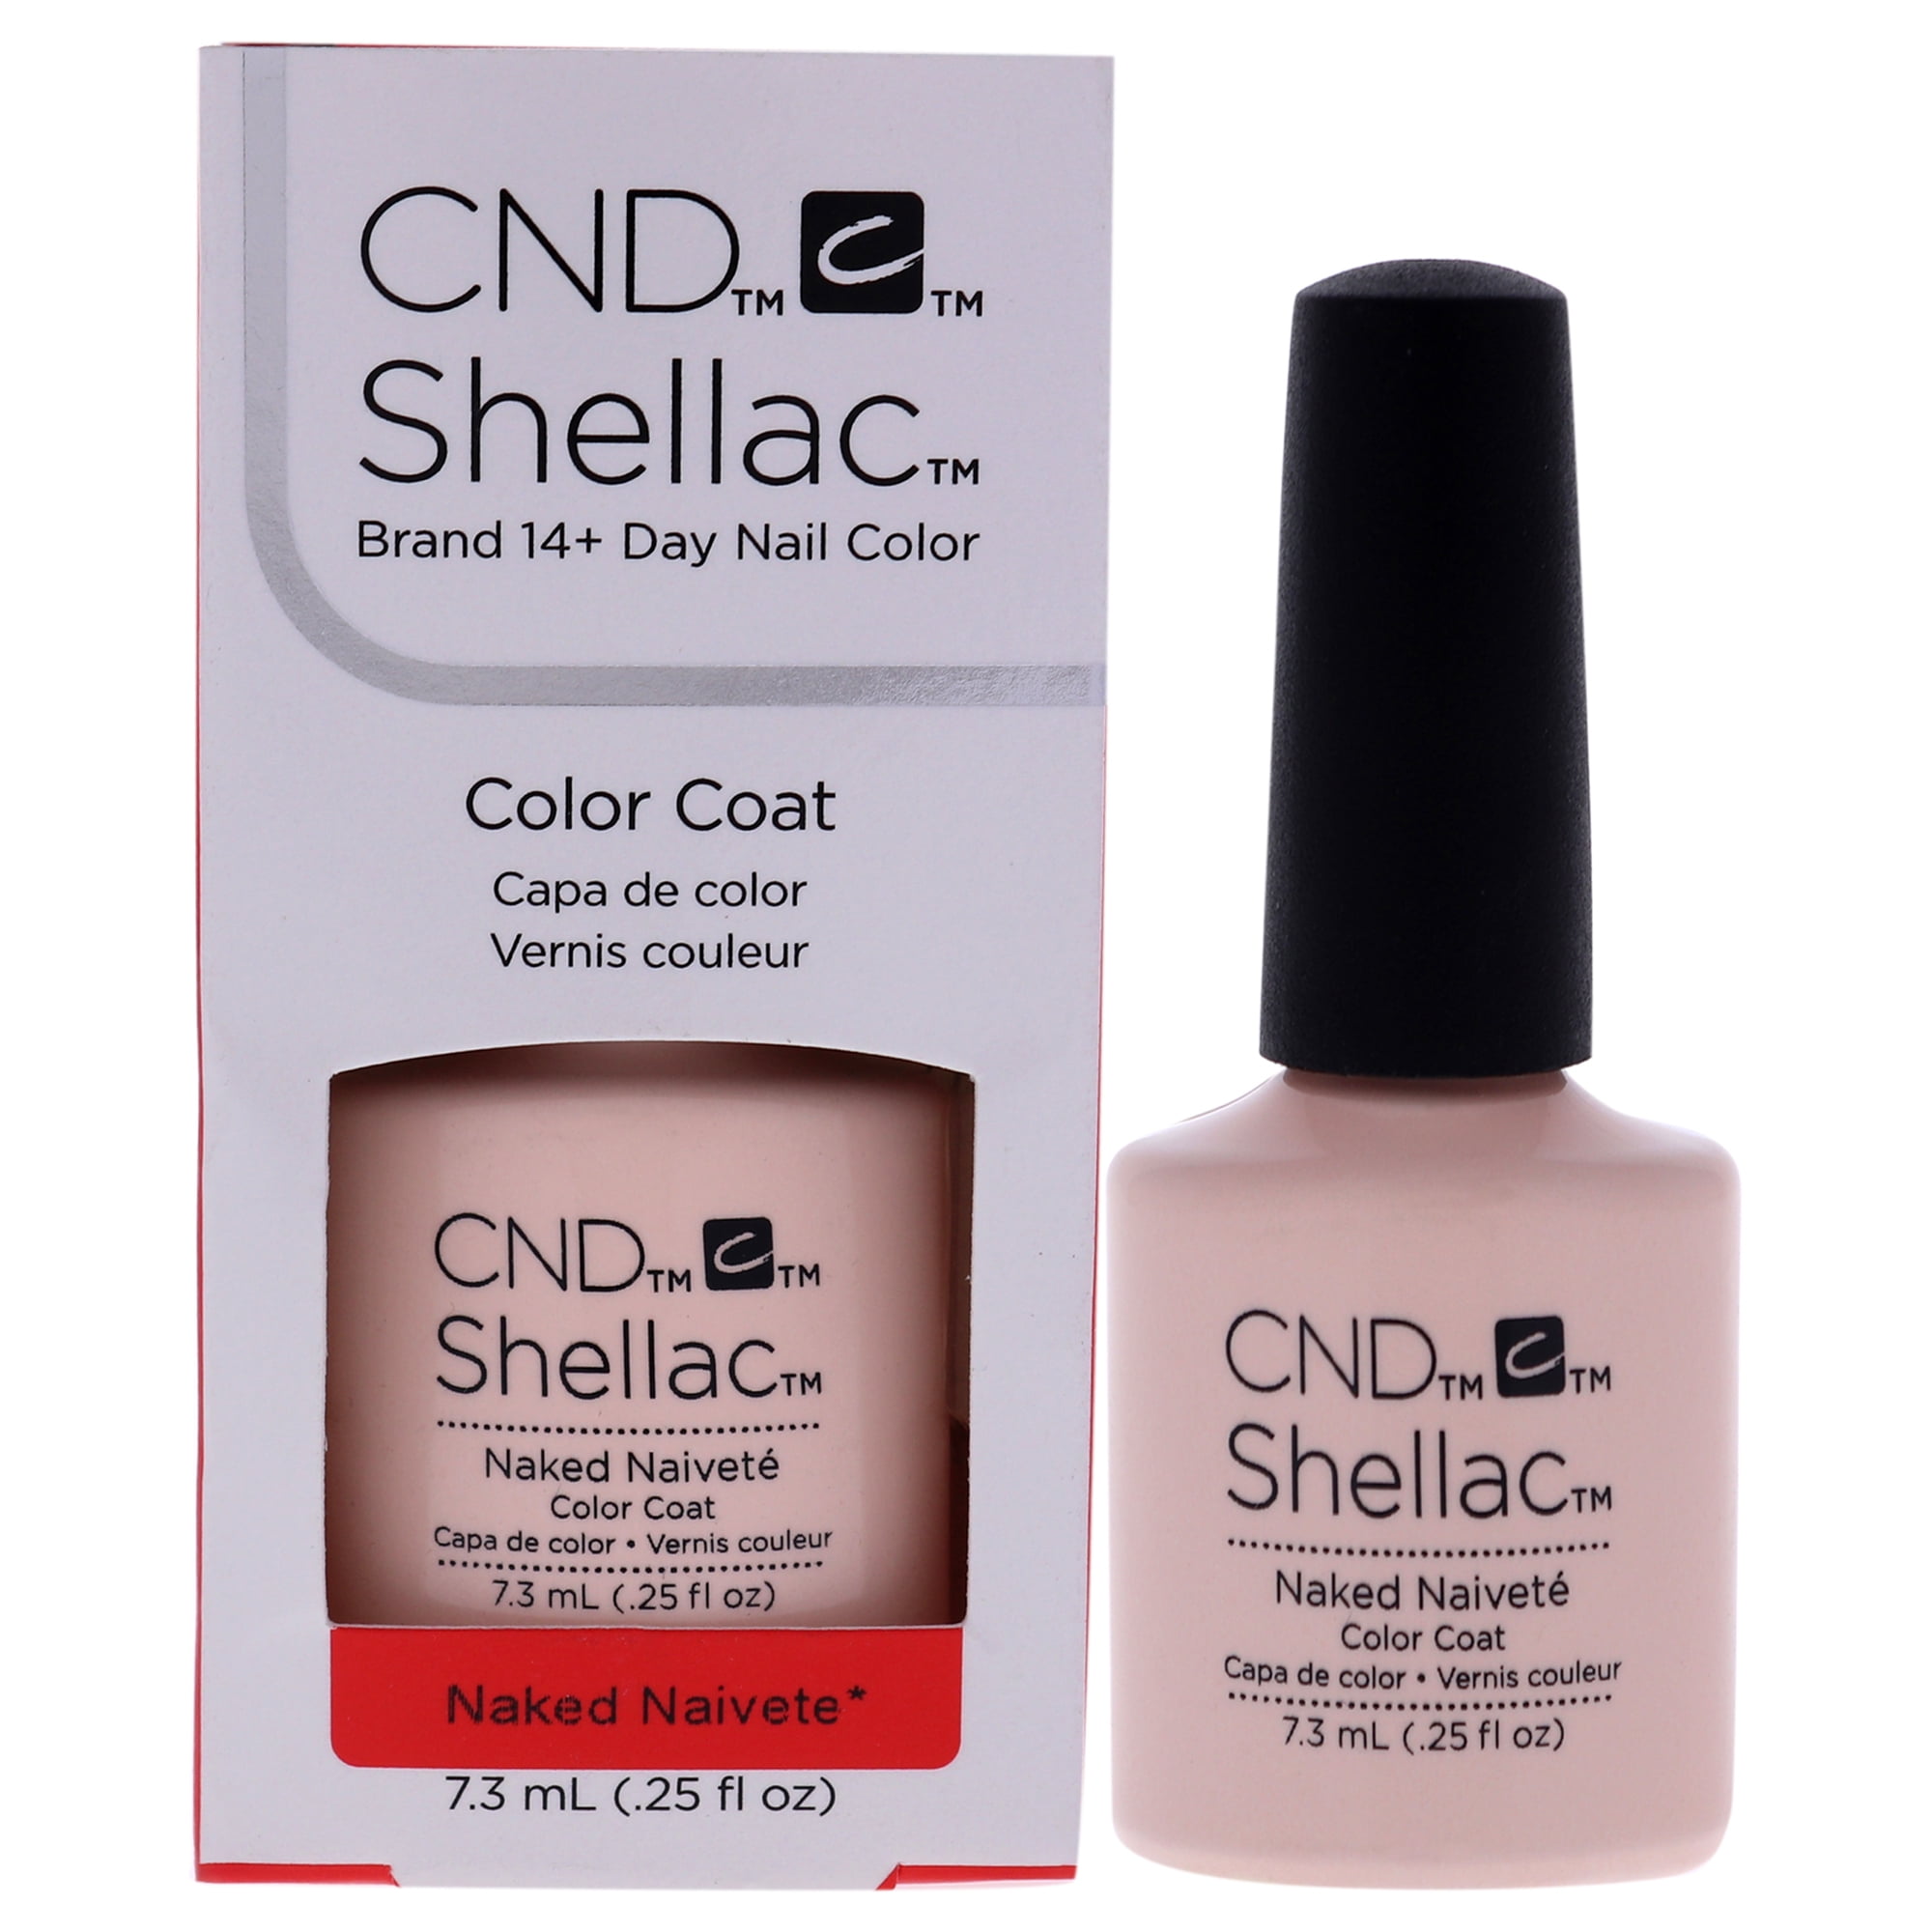 CND Shellac - Naked Naivete I gel-nails.com